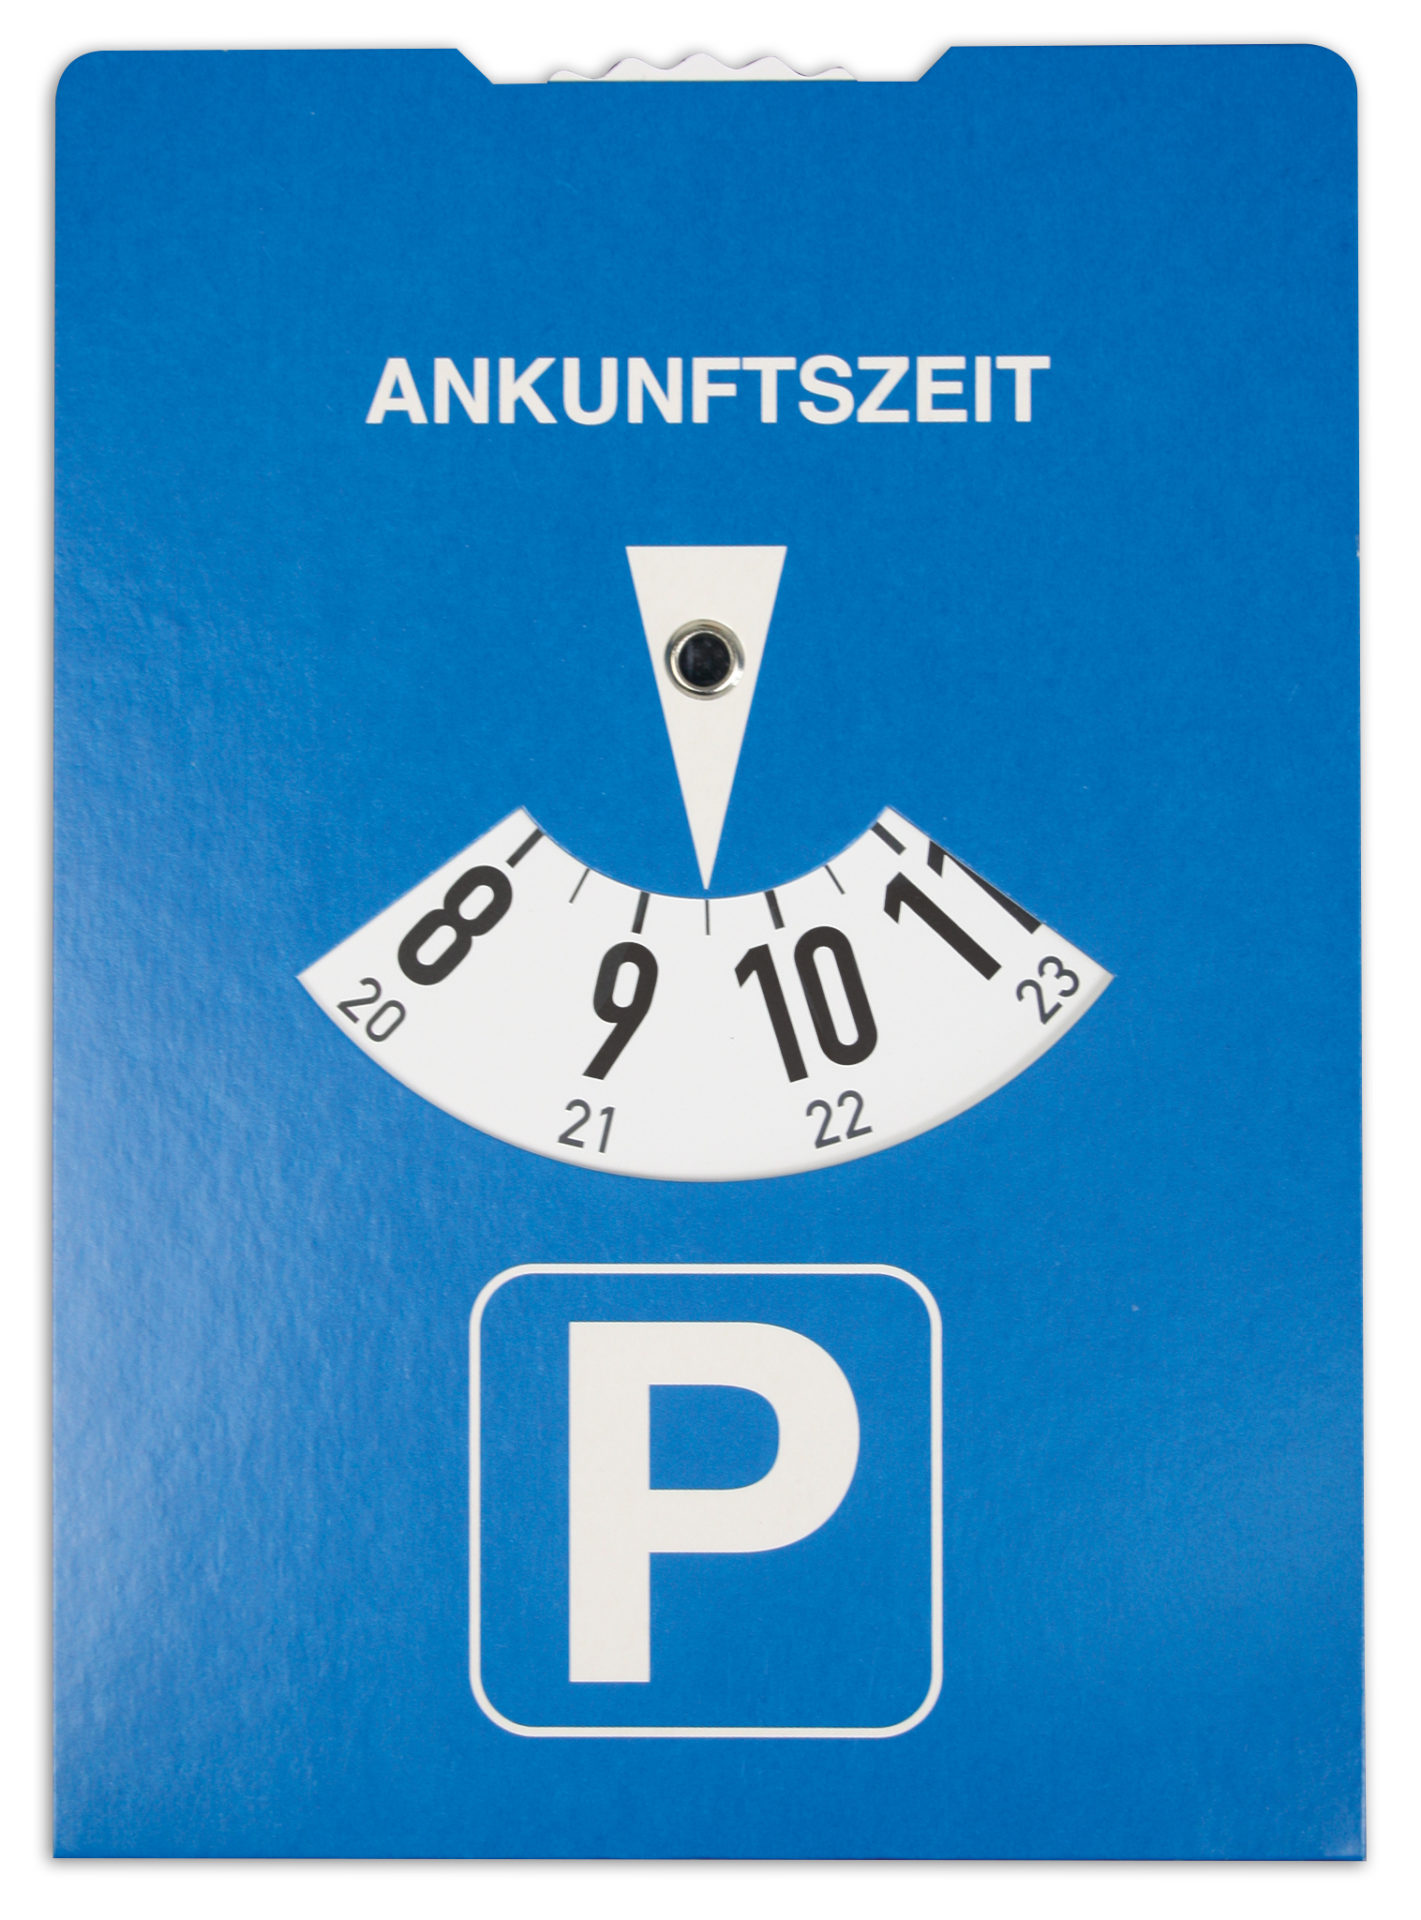 Parkscheibe mit 24-Std.-Einteilung - RNK Verlag